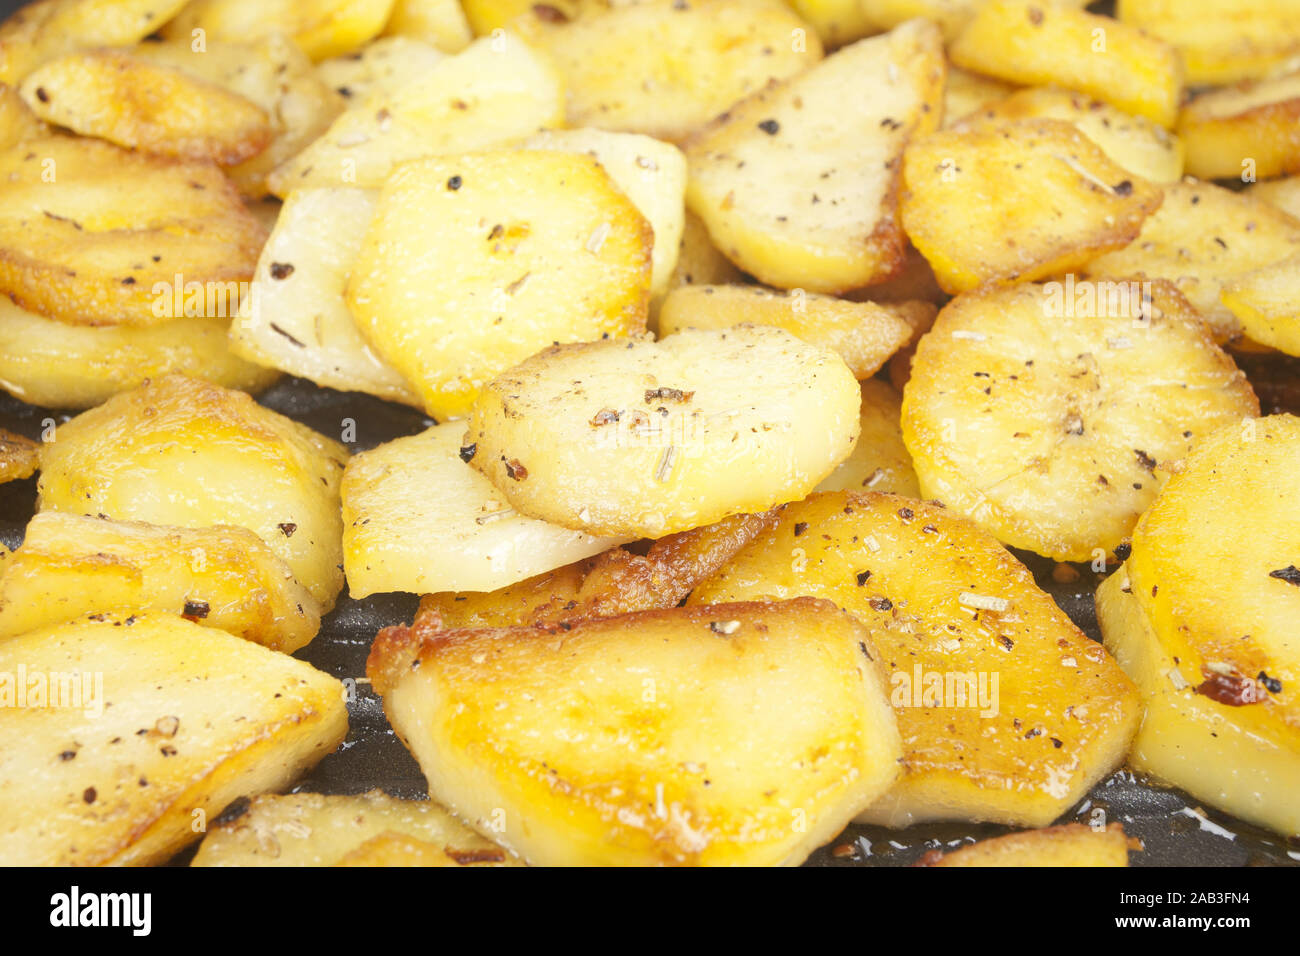 Bratkartoffeln in einer Pfanne |Fried potatoes in a pan| Stock Photo